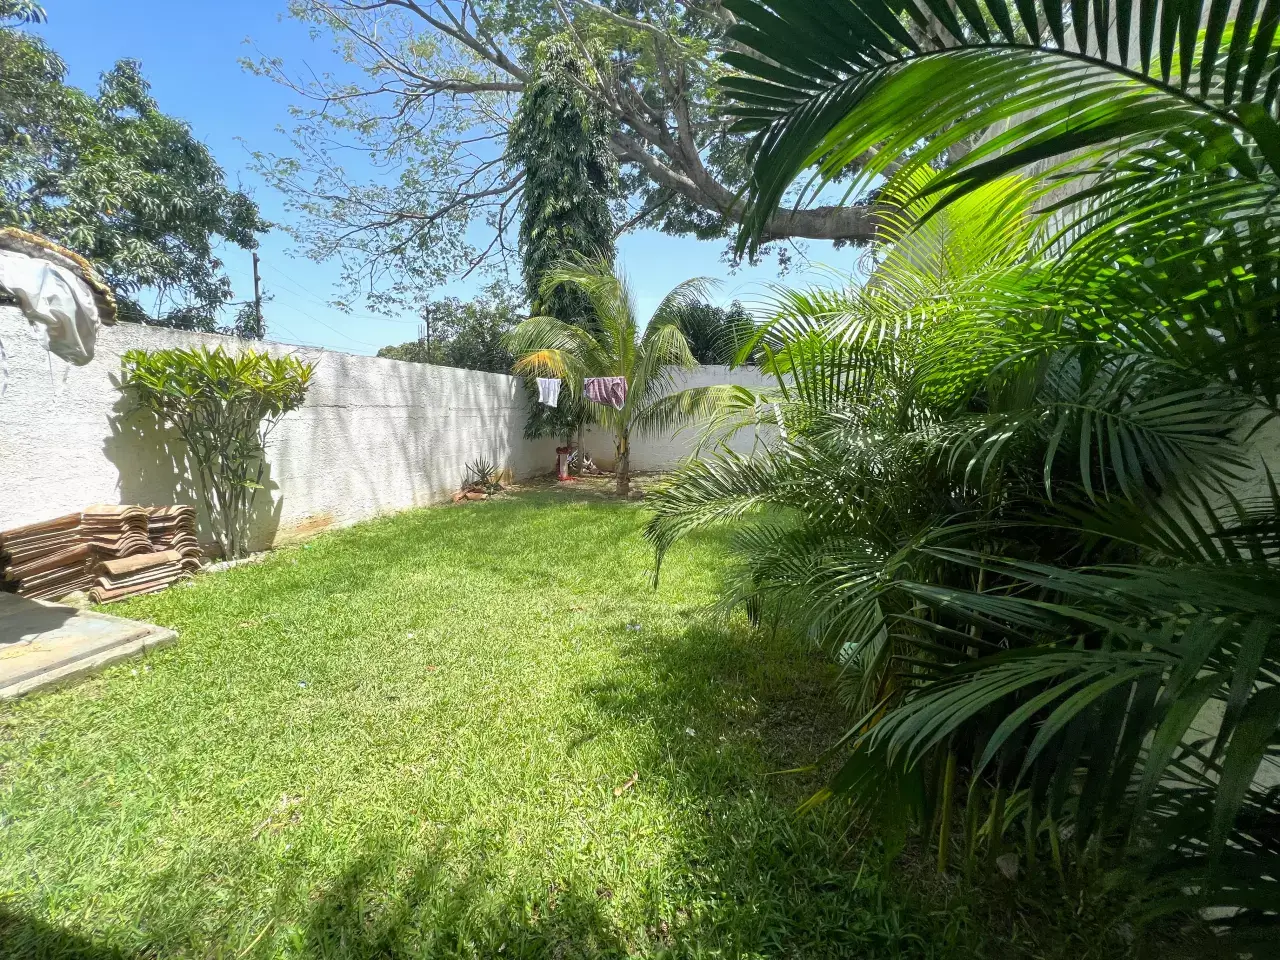 Área amplia de jardín cuenta con césped bien cuidado y área para secar ropa bajo el sol, además cuenta con diferentes palmeras pequeñas y arbustos.